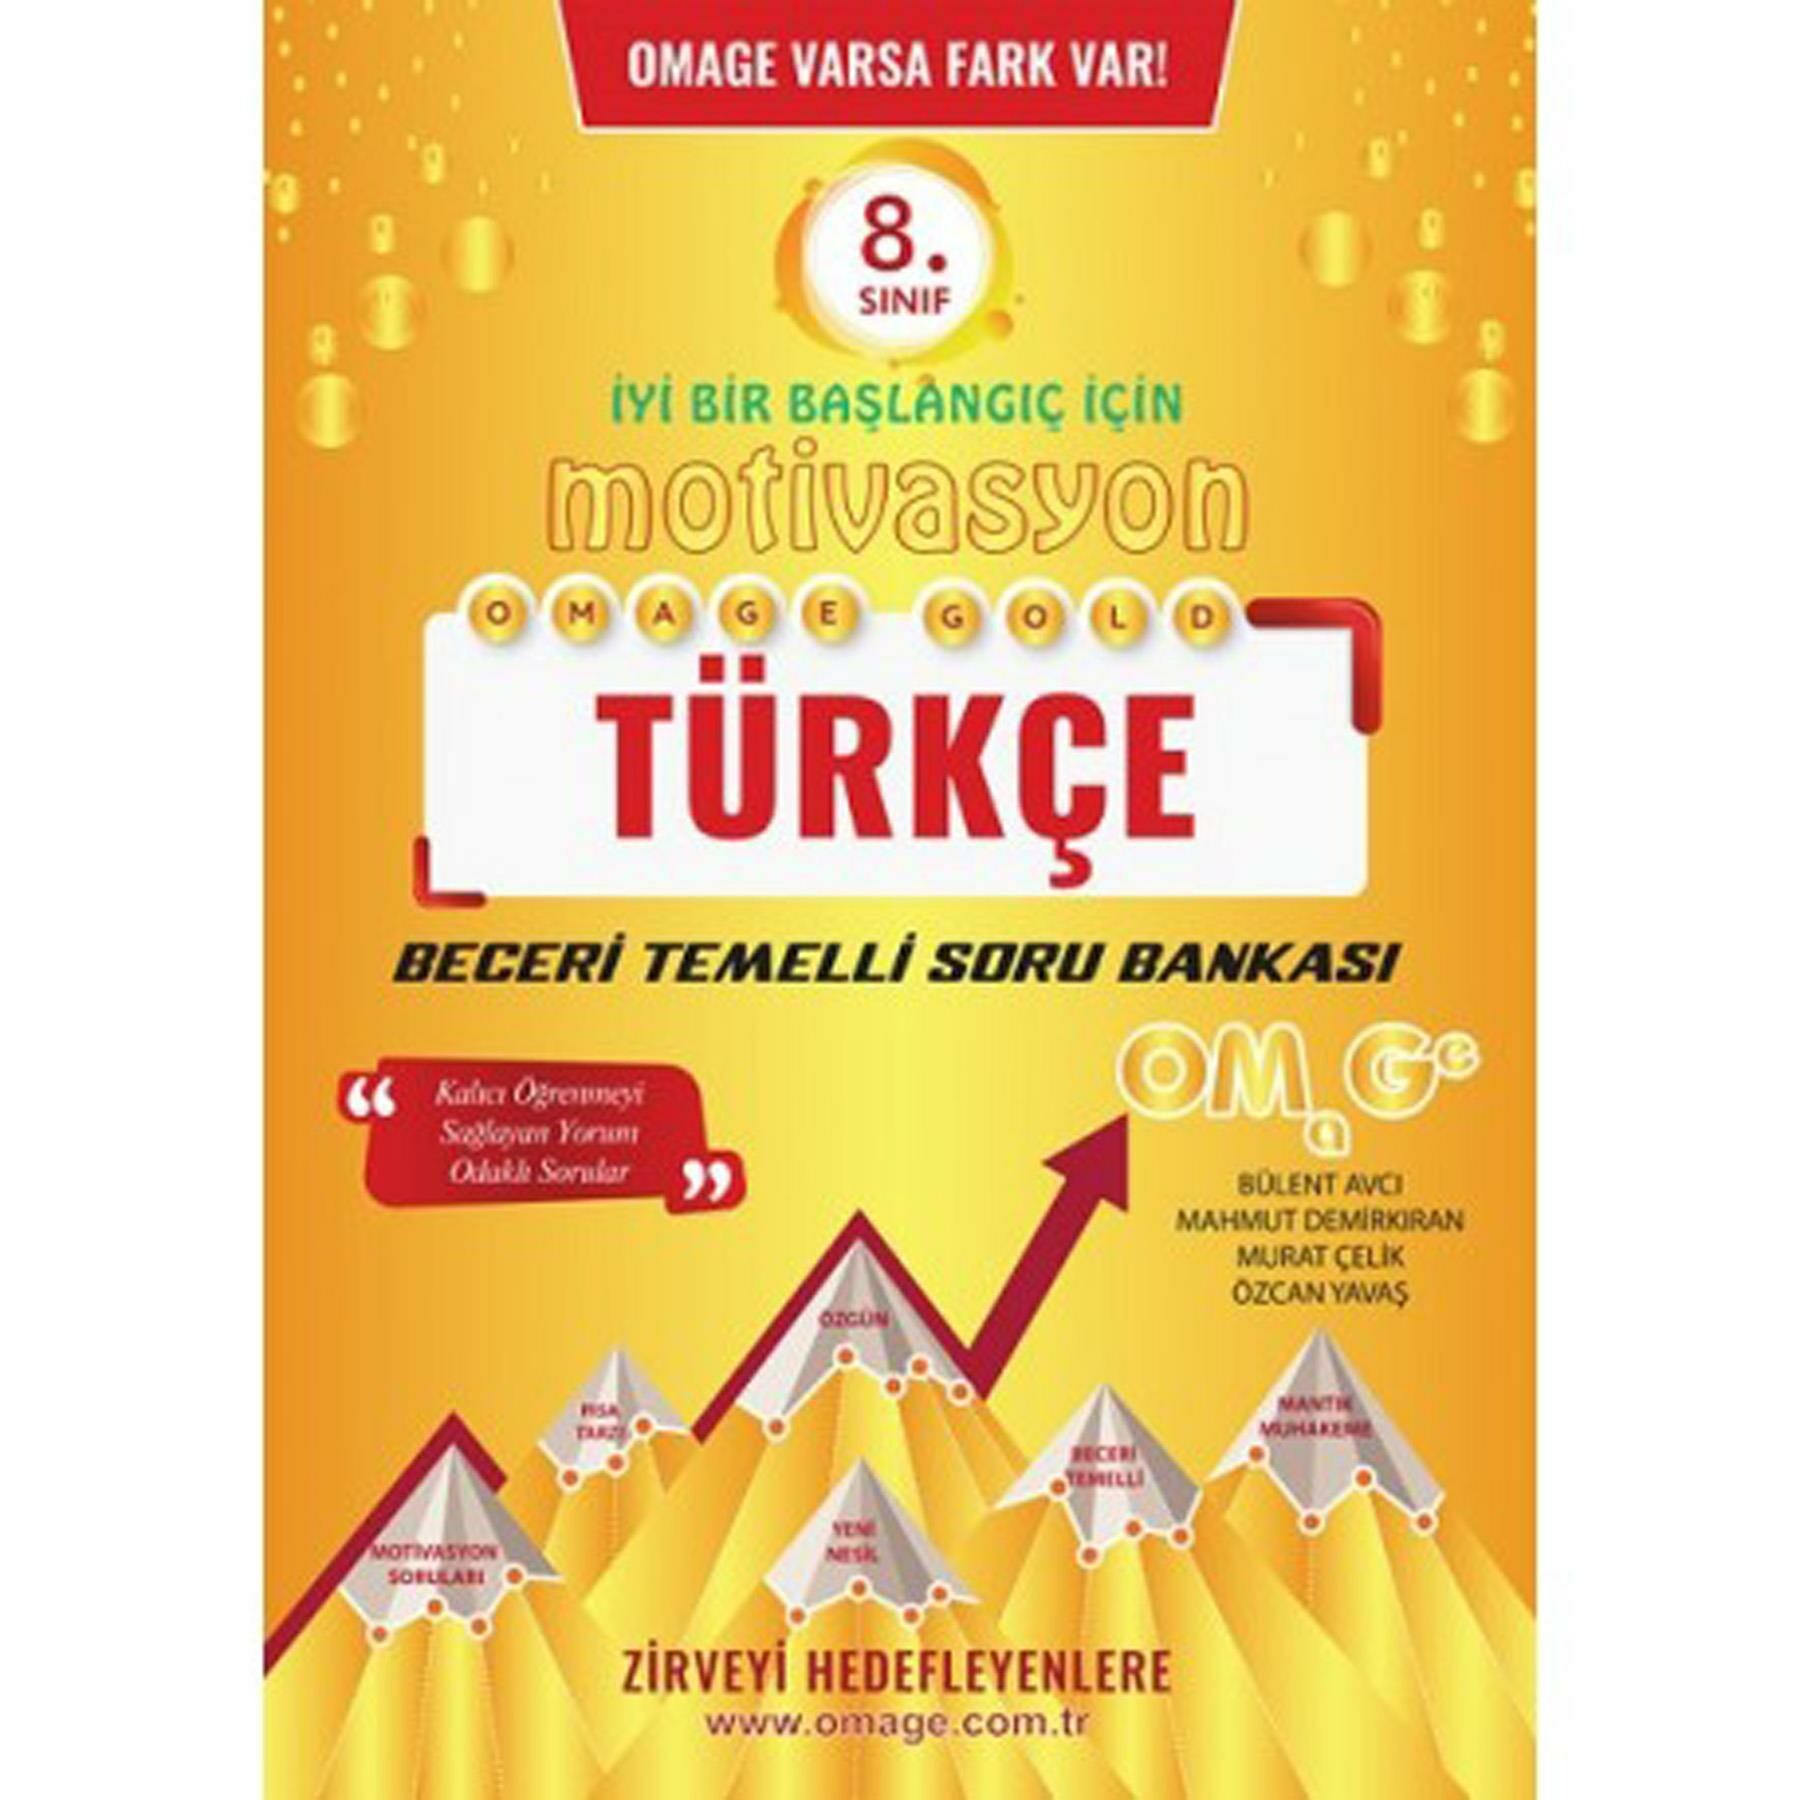 Omage 8.Sınıf Mativasyon Türkçe Soru Bankası